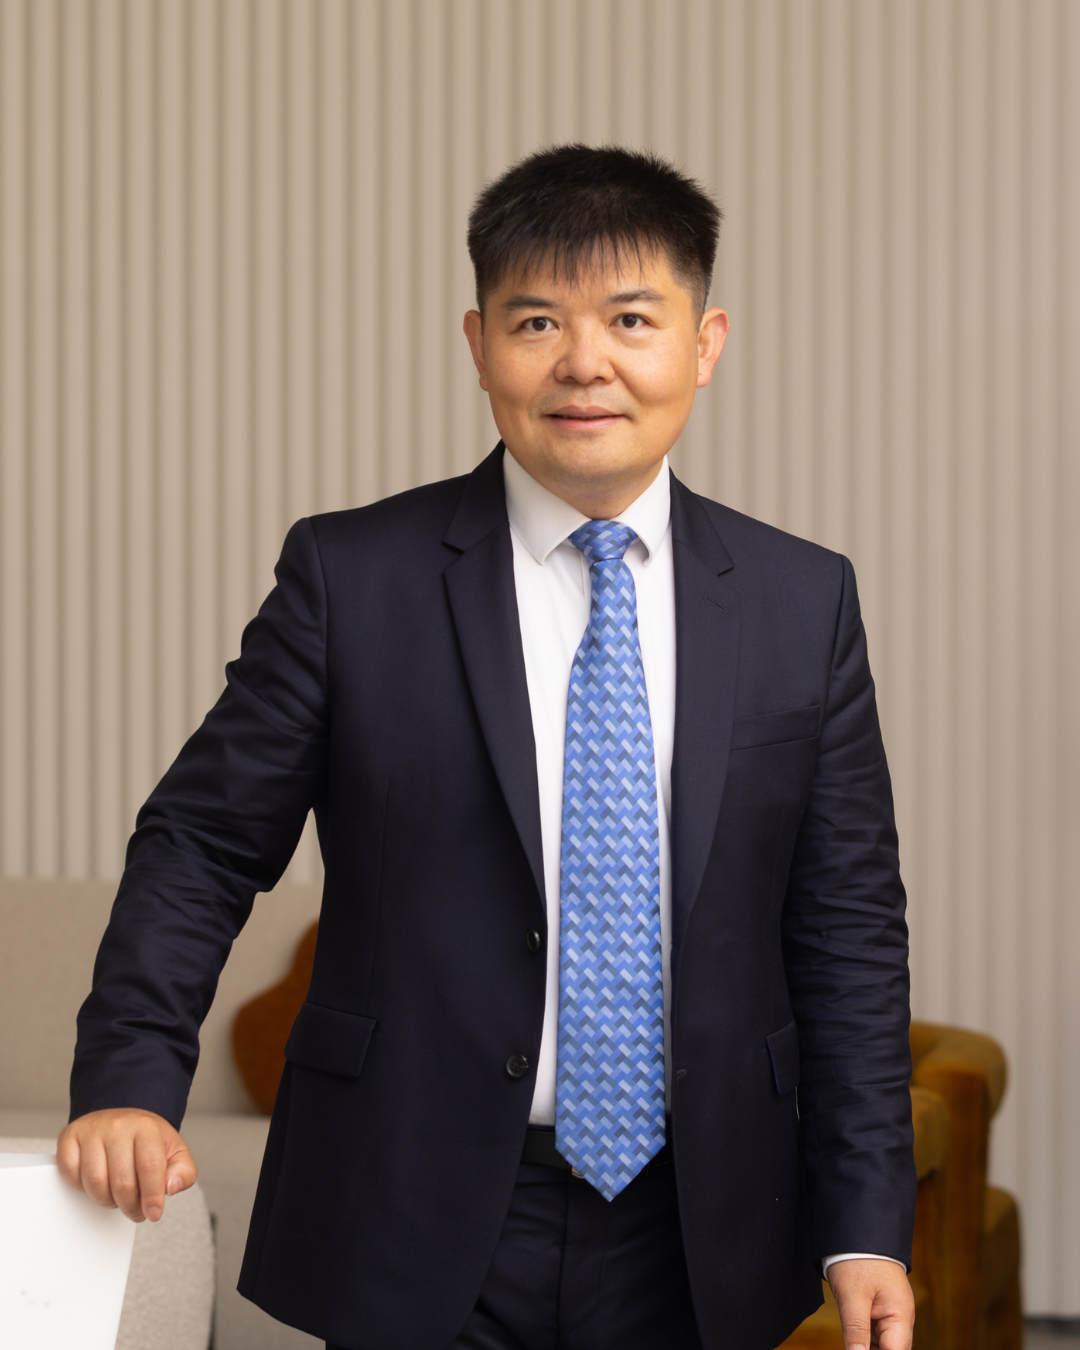 Dr Ian Zhu